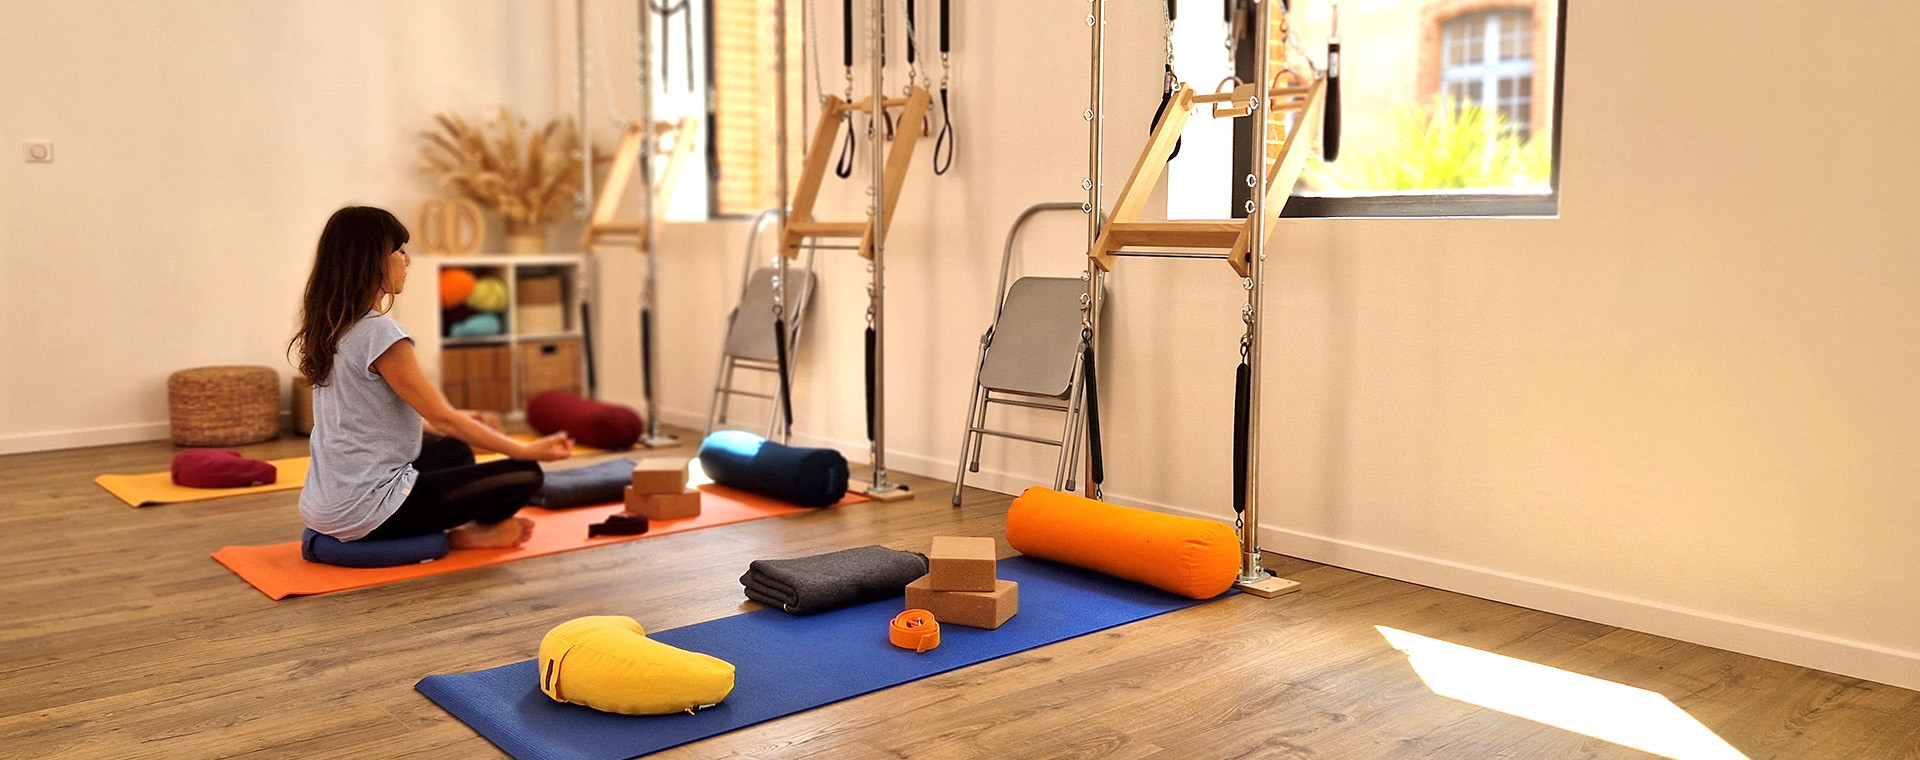 Salle de Yoga à Montauban, cours privés et collectifs